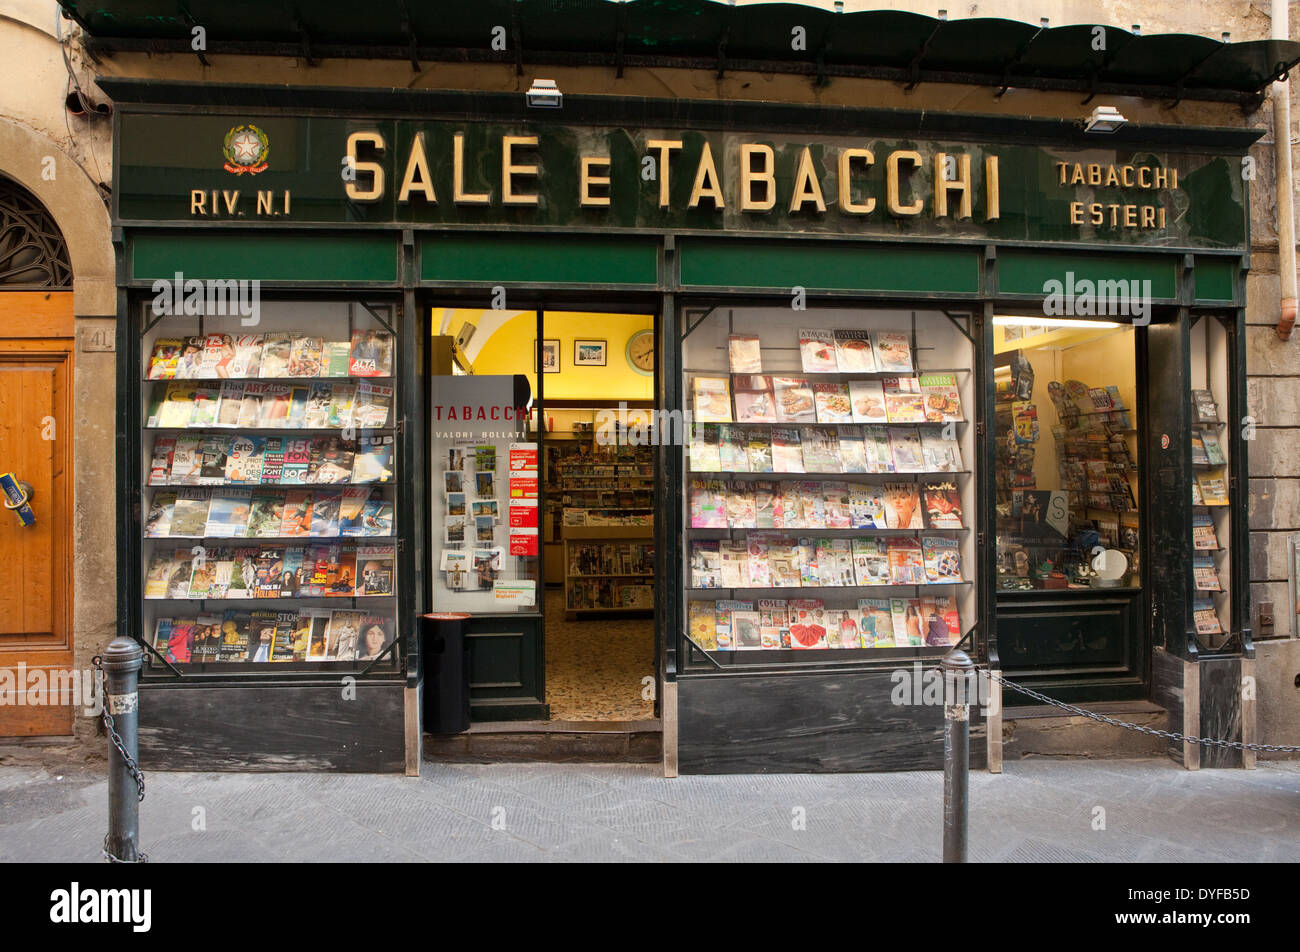 Das Äußere eines tabacchi Shop in Arezzo, Italien. Diese Geschäfte sind die Italienischen 7-11's und verkaufen Sie eine Vielzahl von Waren neben Tabak. Stockfoto